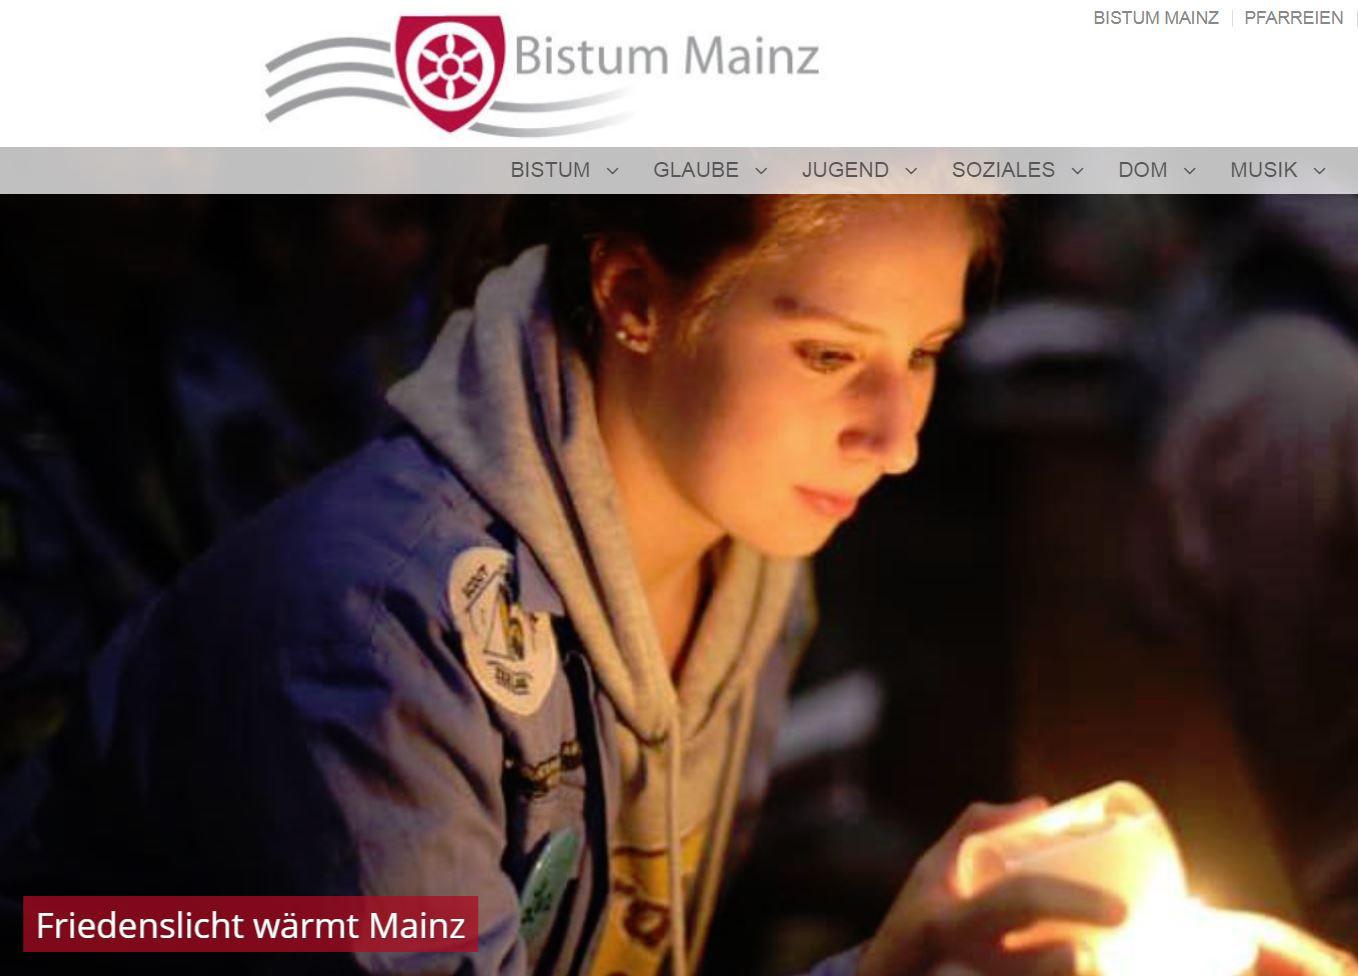 Startseite bistummainz.de mit Friedenslicht (c) Bistum Mainz